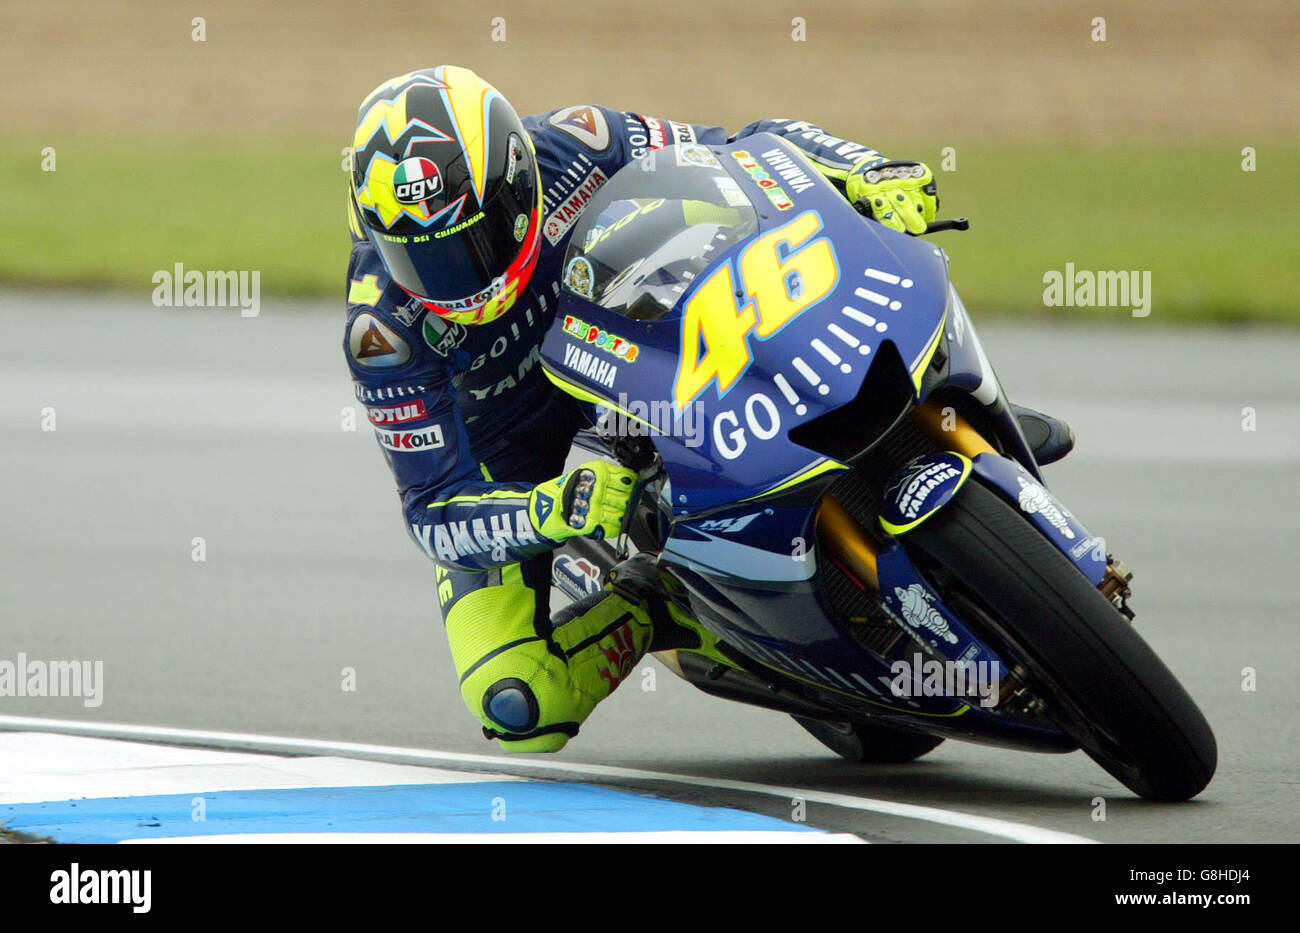 Motorradfahren - großer Preis von Großbritannien - Moto GP - Rennen - Donnington Park. Gauloises Yamaha Team Rider Valentino Rossi Stockfoto